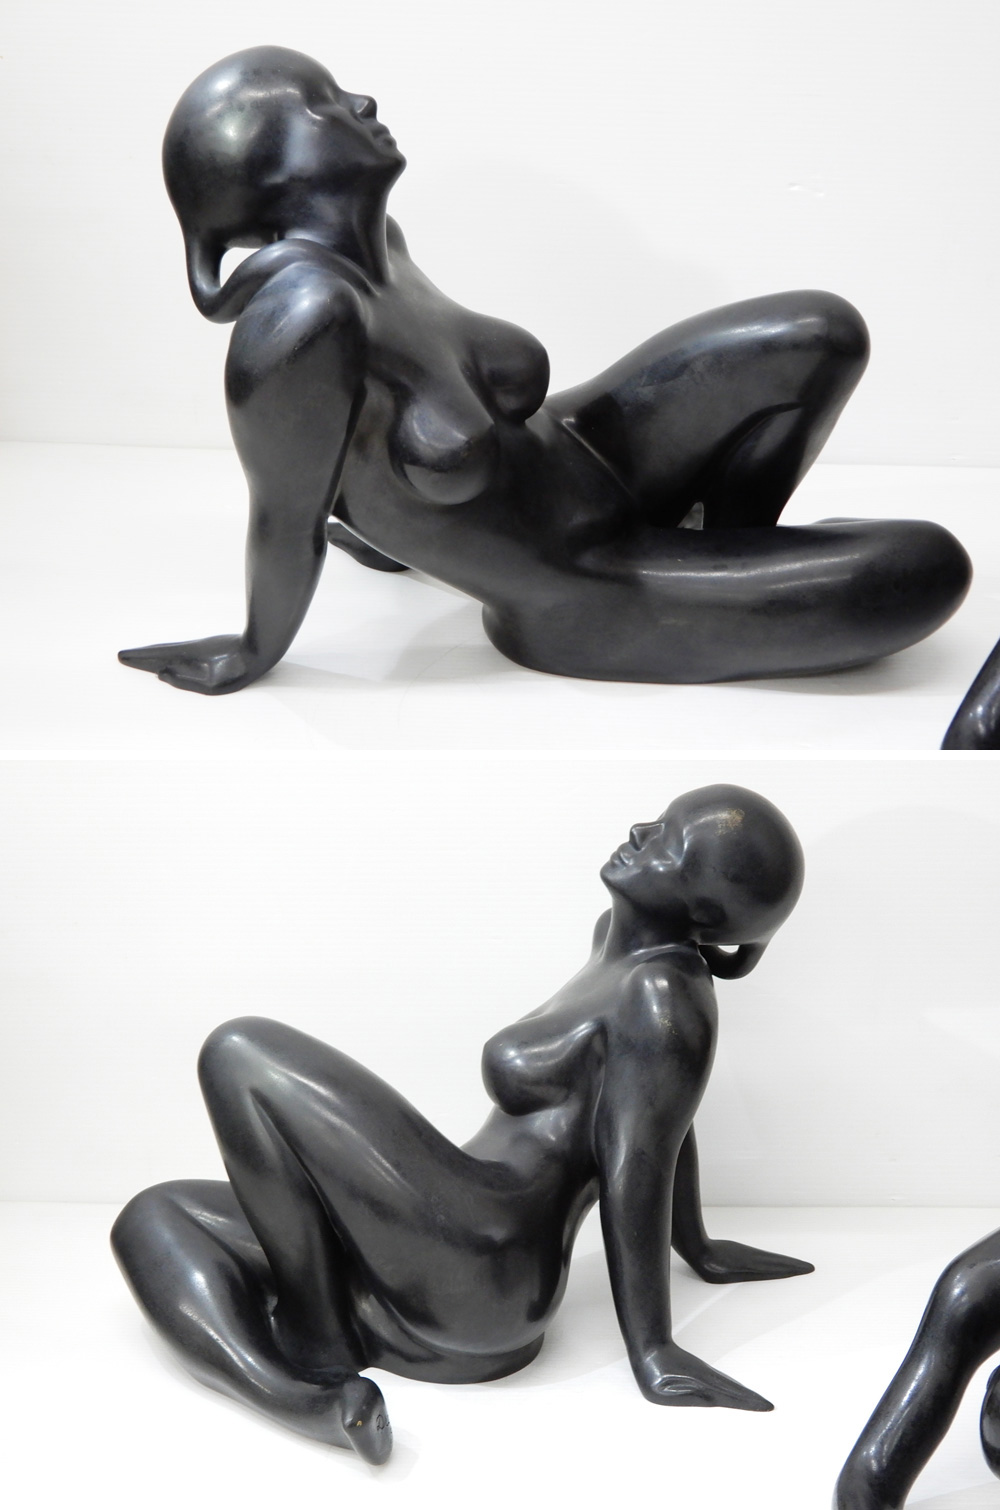 新価格◆◎2点セット! フランス彫刻家 Patrick Drouin パトリック・ドゥルーアン 裸婦像 ブロンズ 女性像 オブジェ 西洋彫刻